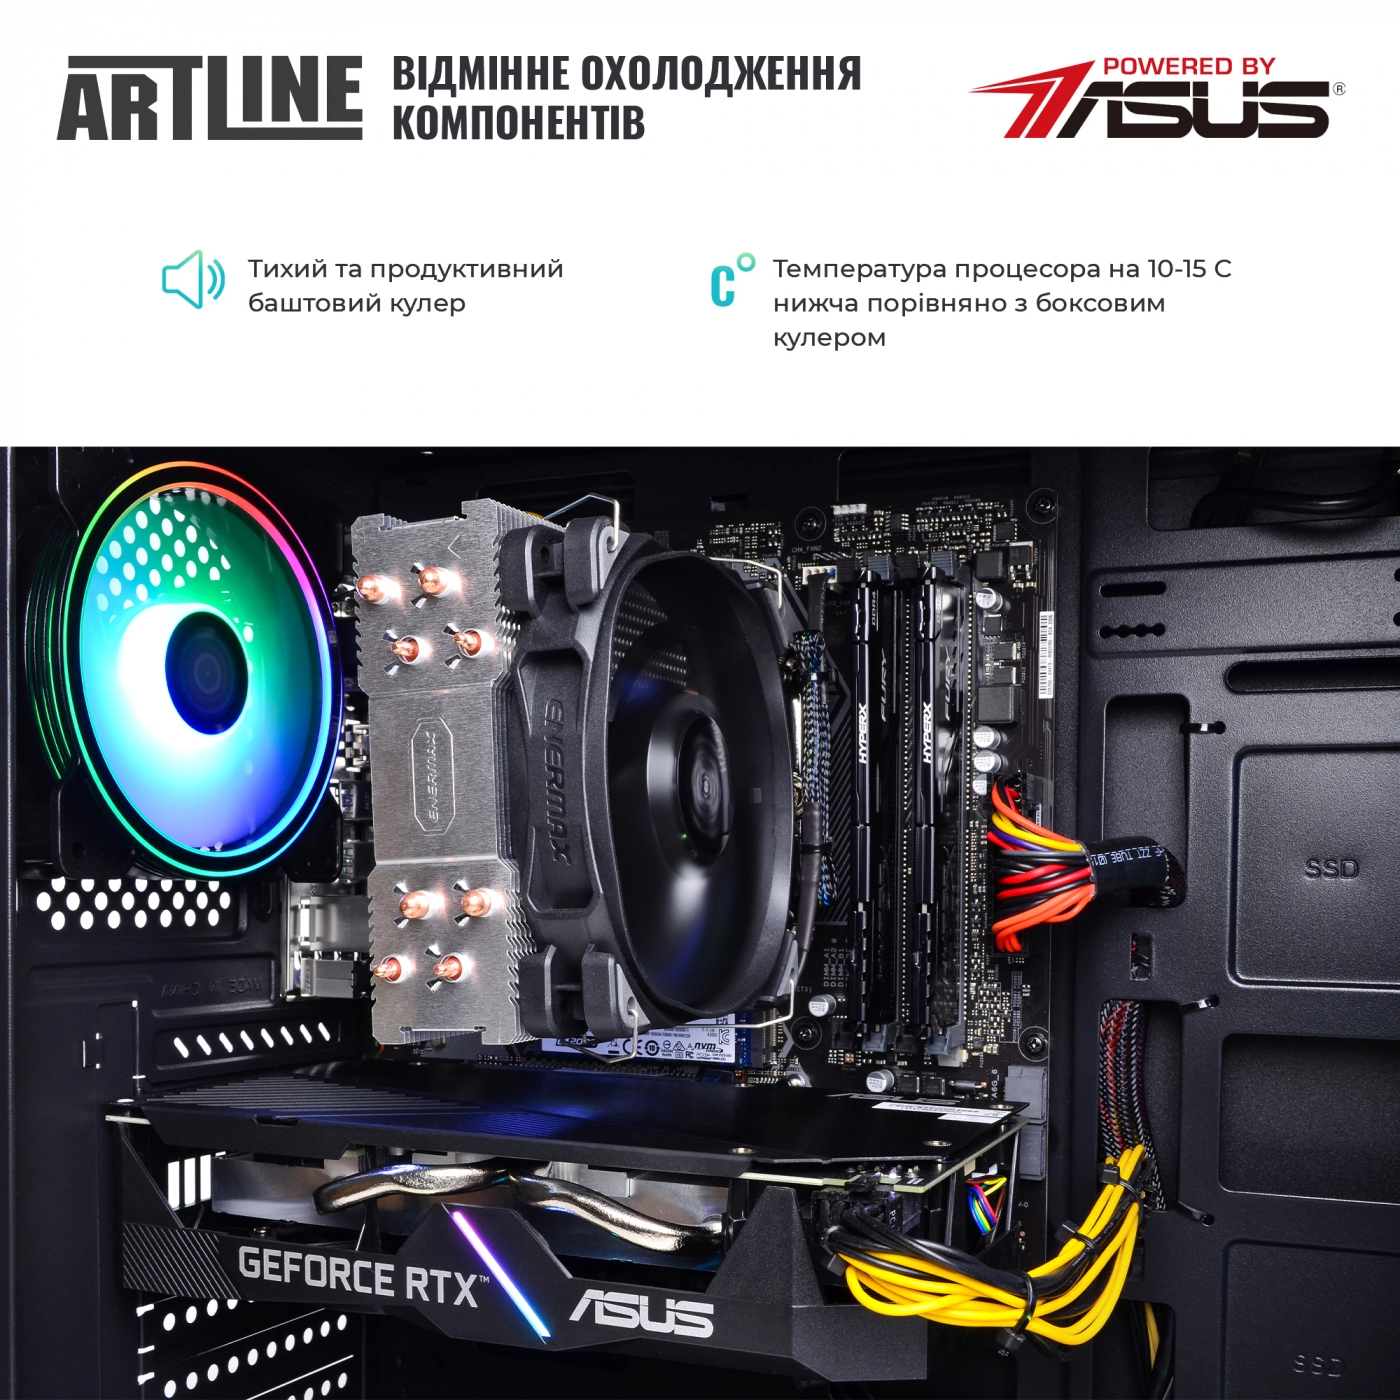 Купить Компьютер ARTLINE Gaming X77v38 - фото 8